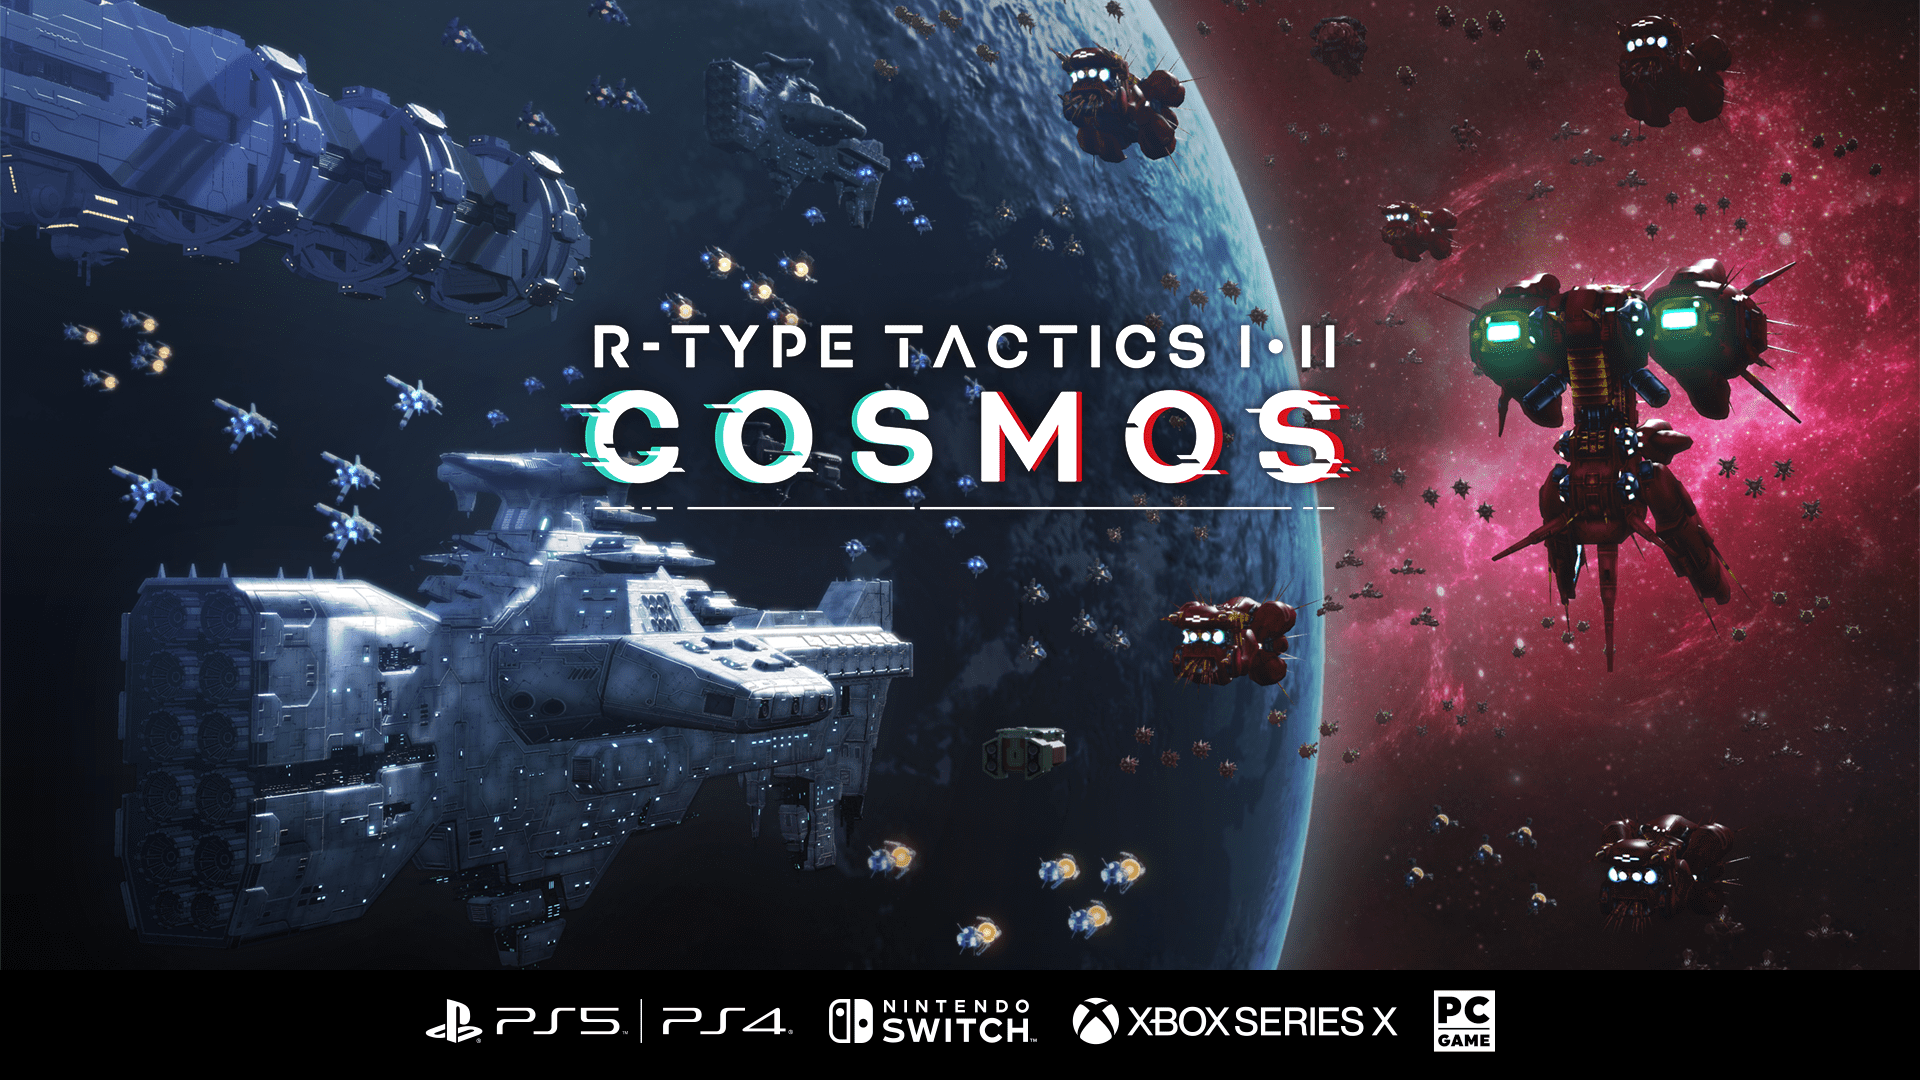 Update on the Release Schedule of "R-Type Tactics I・II Cosmos"